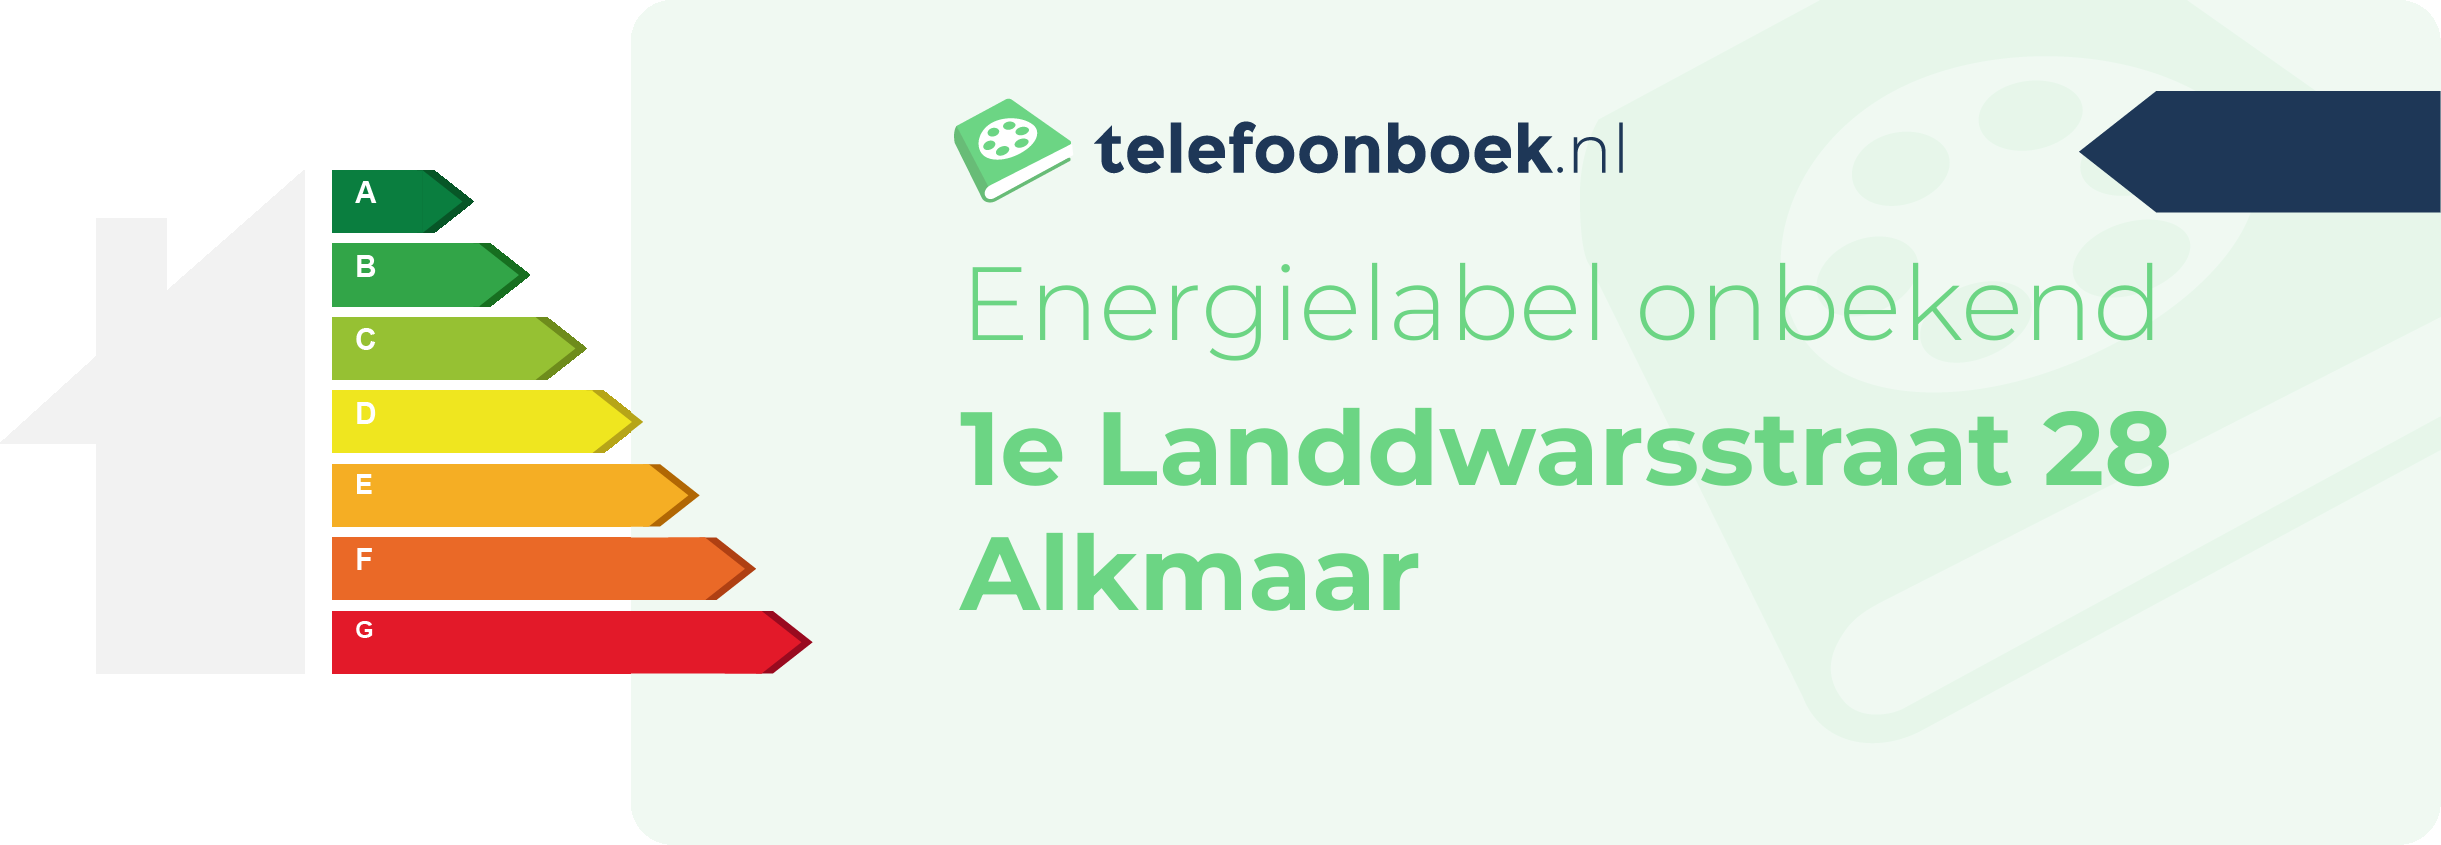 Energielabel 1e Landdwarsstraat 28 Alkmaar